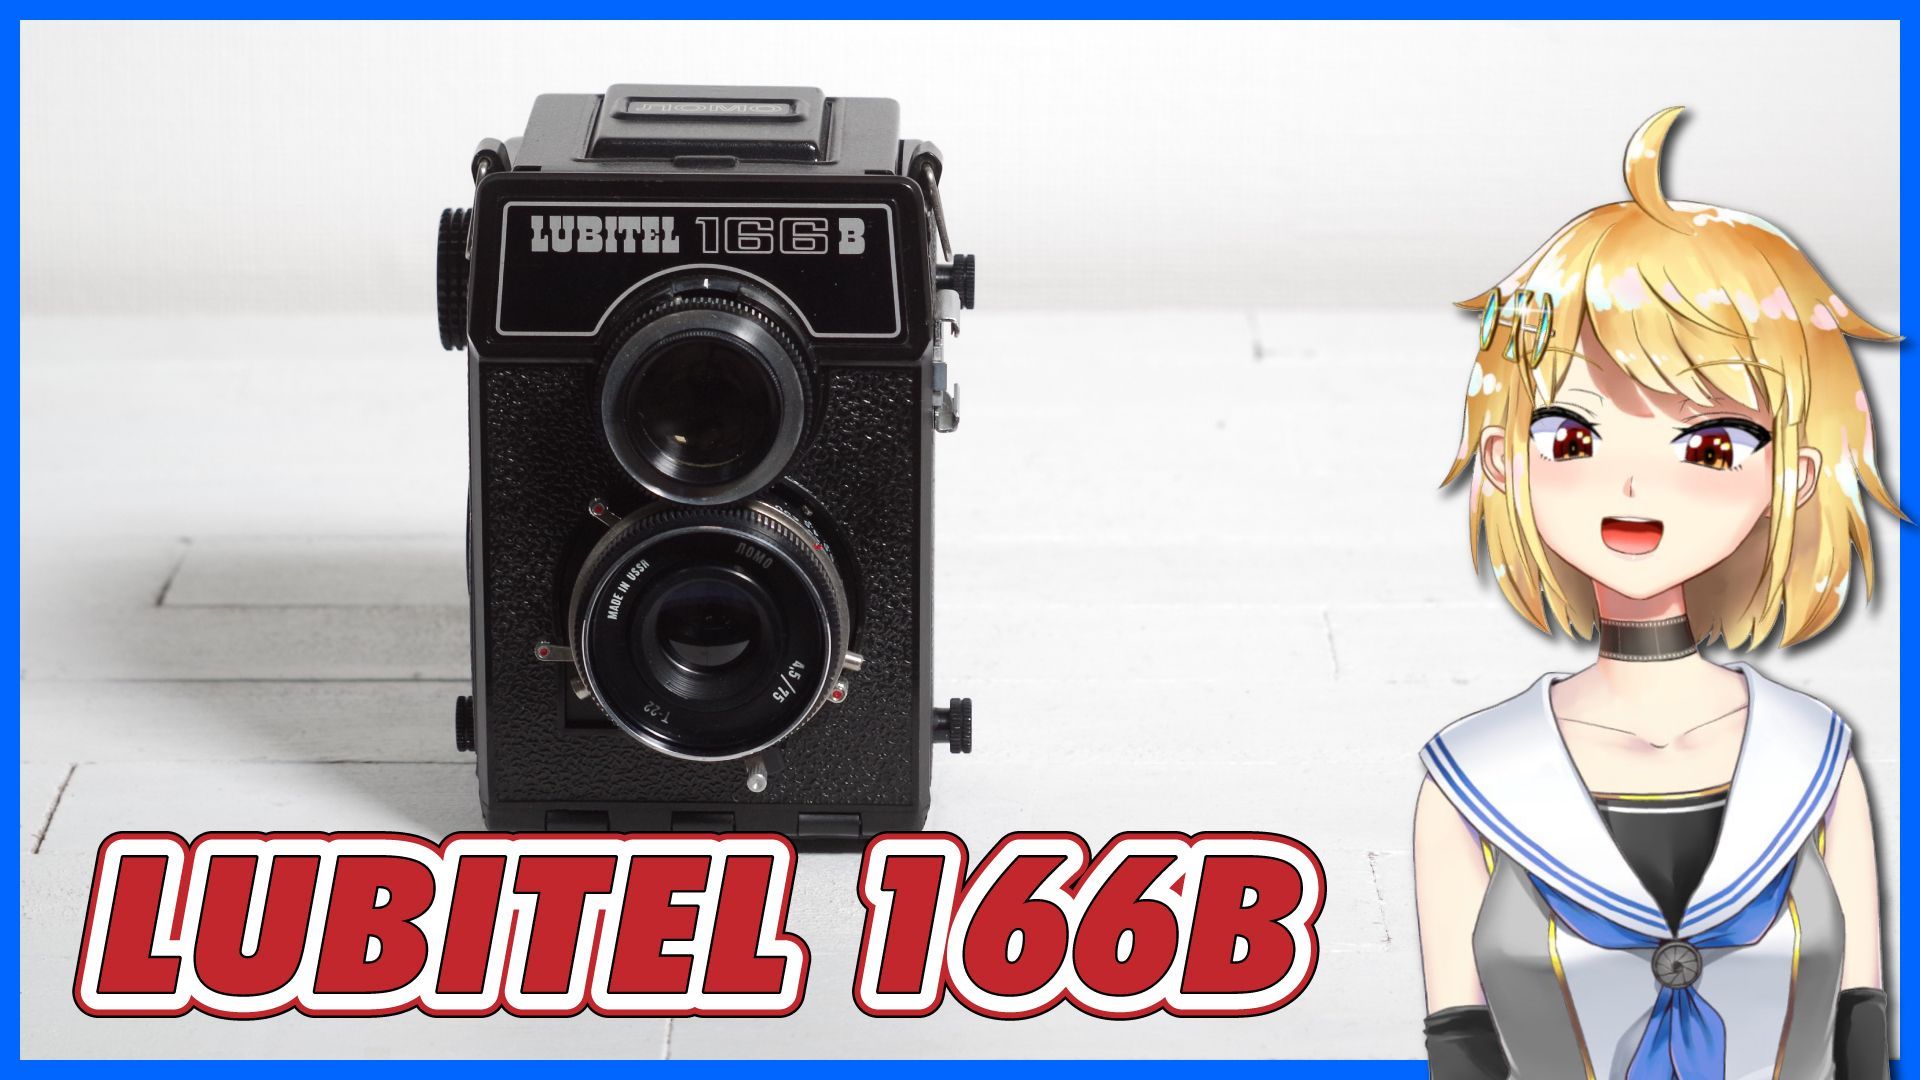 LUBITEL 166B マニア以外にも好まれた旧ソ連製二眼レフカメラ 